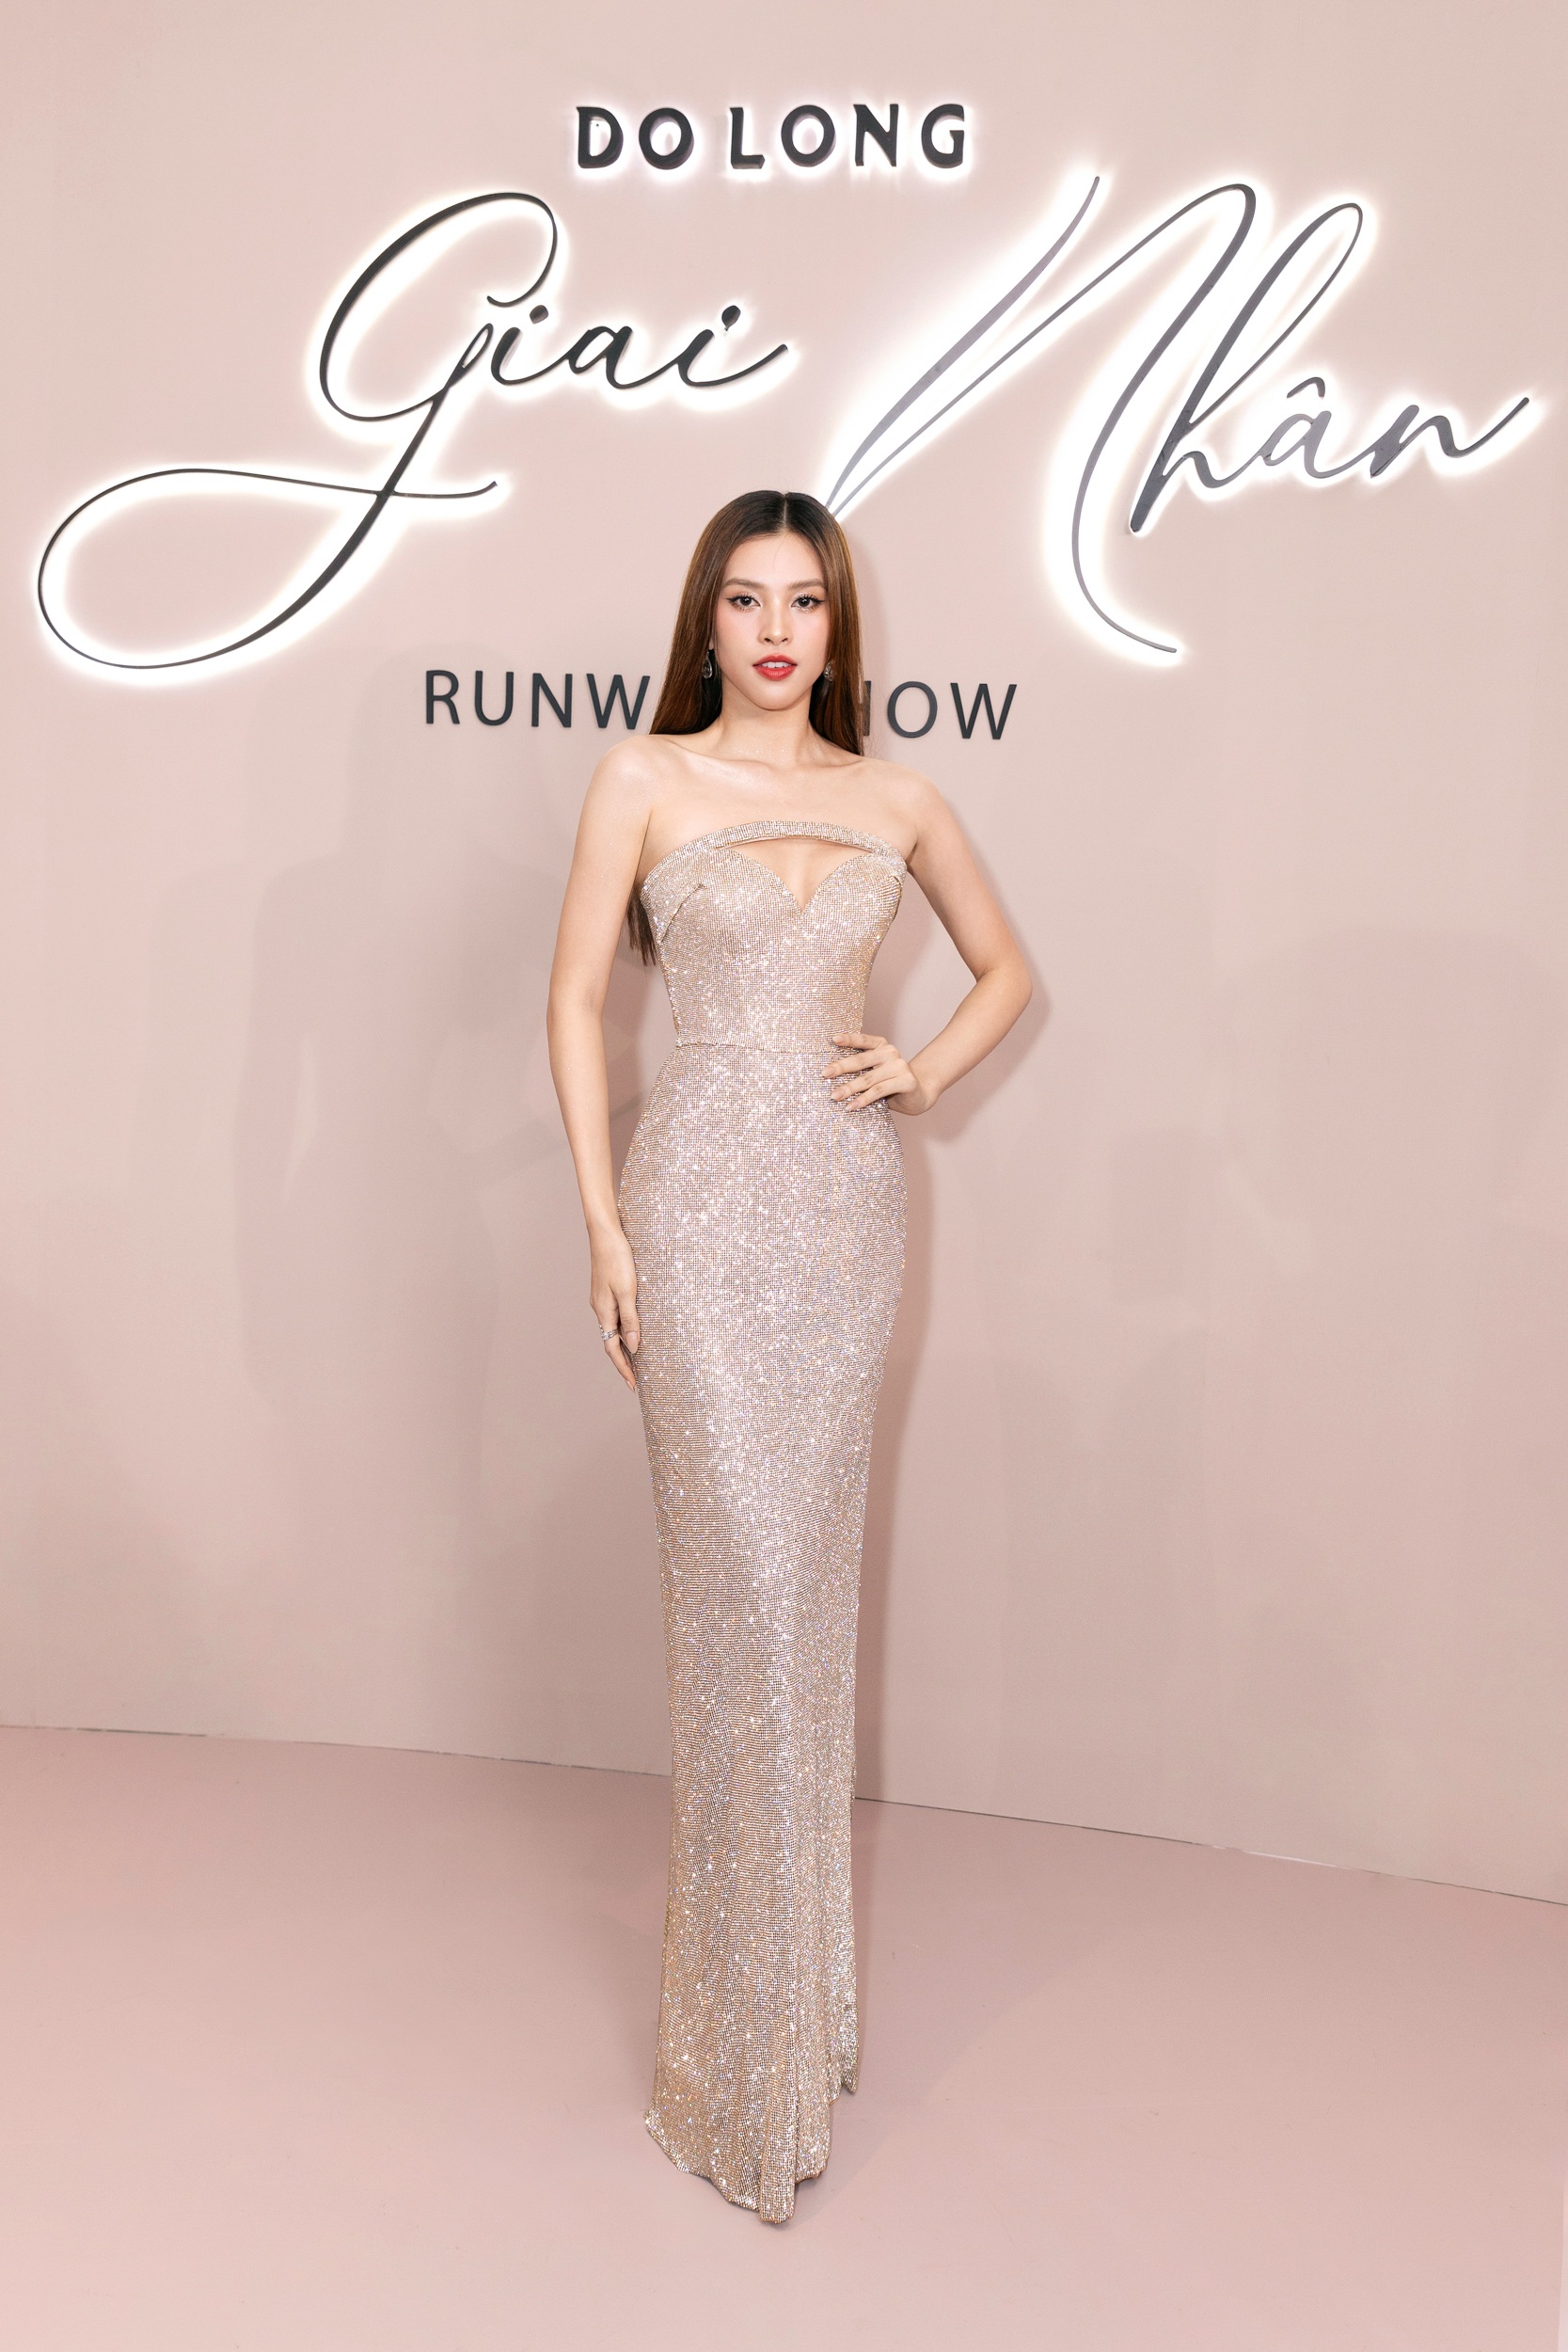 Hoa hậu Tiểu Vy khoe vóc dáng thon gọn trong bộ đầm màu be đính kim sa lấp lánh.